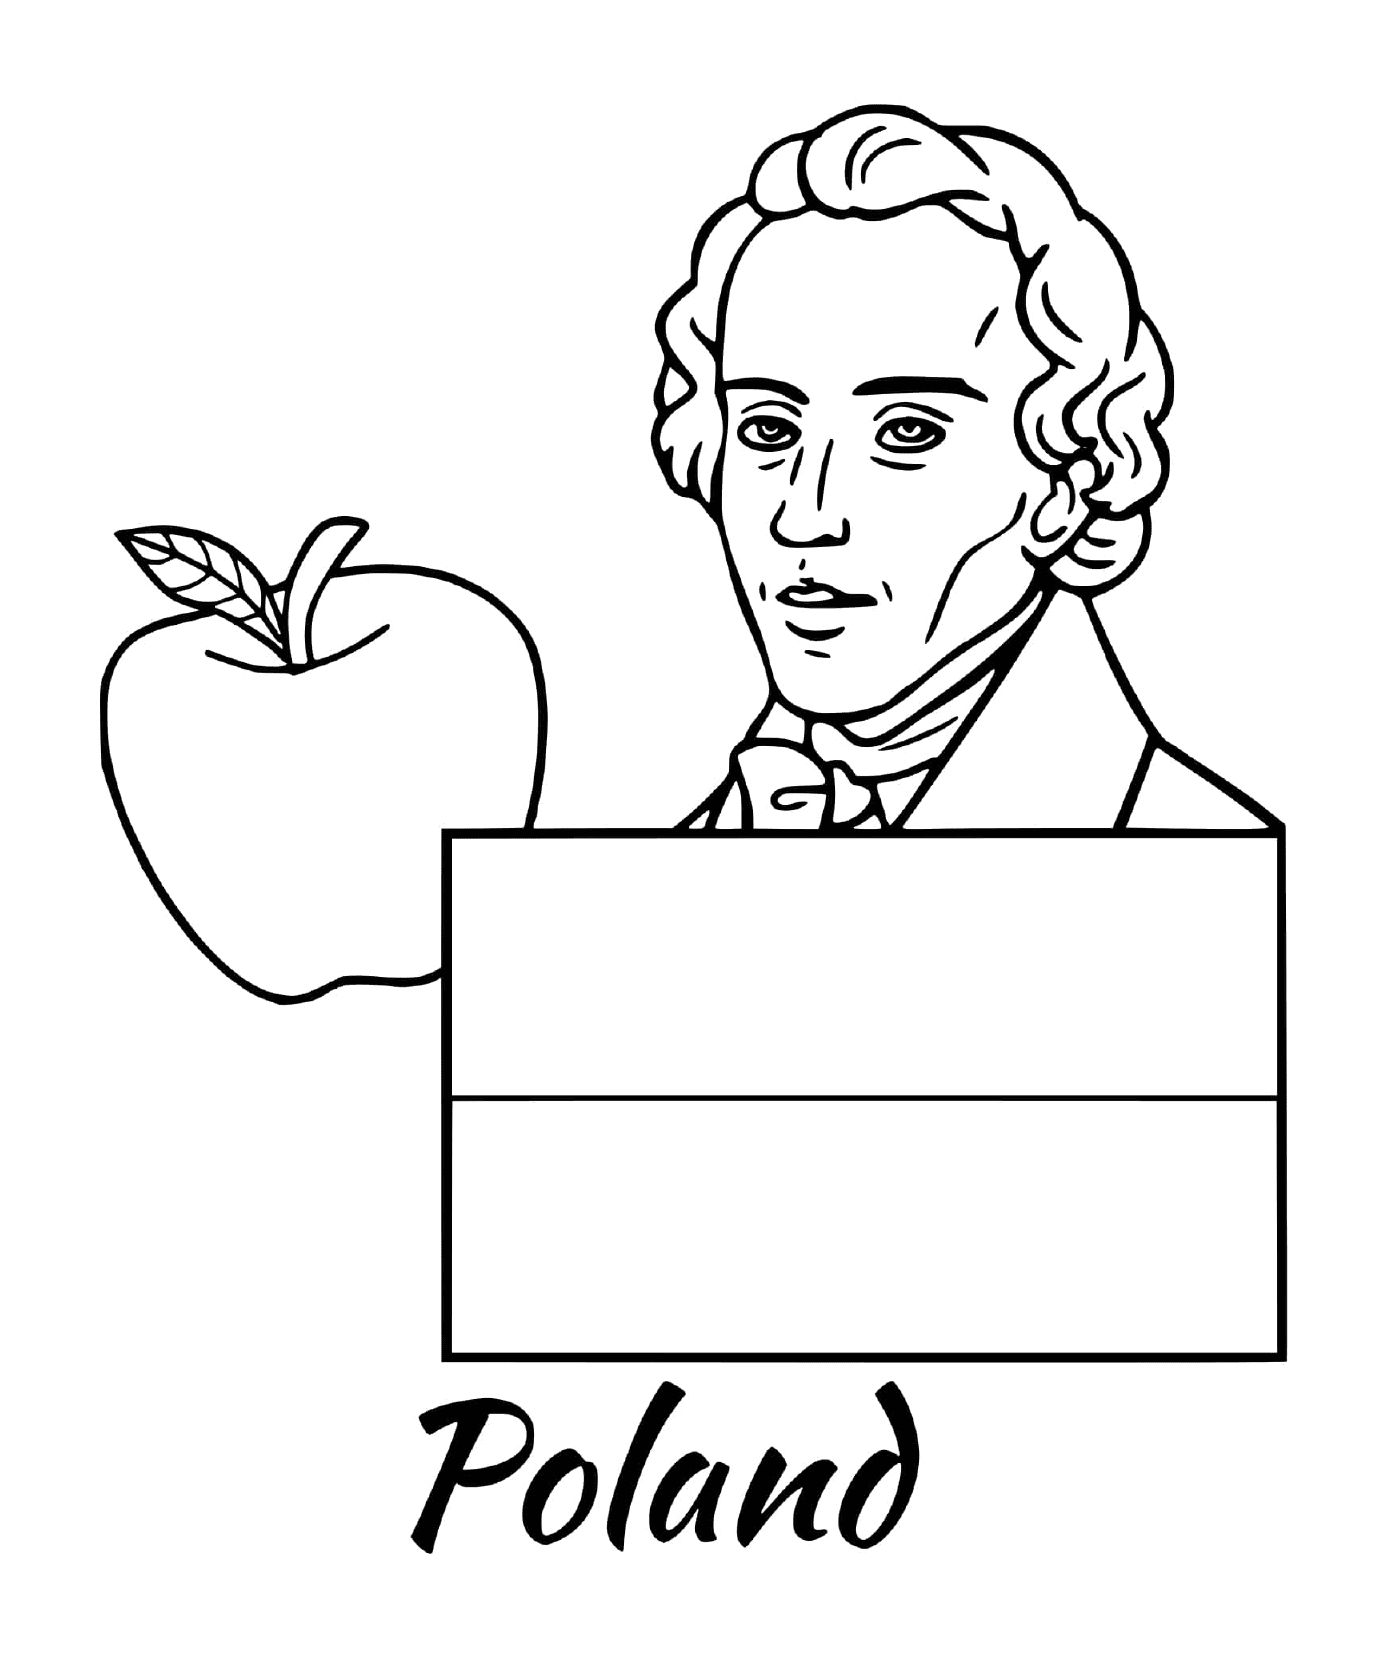  Bandiera della Polonia, Chopin 